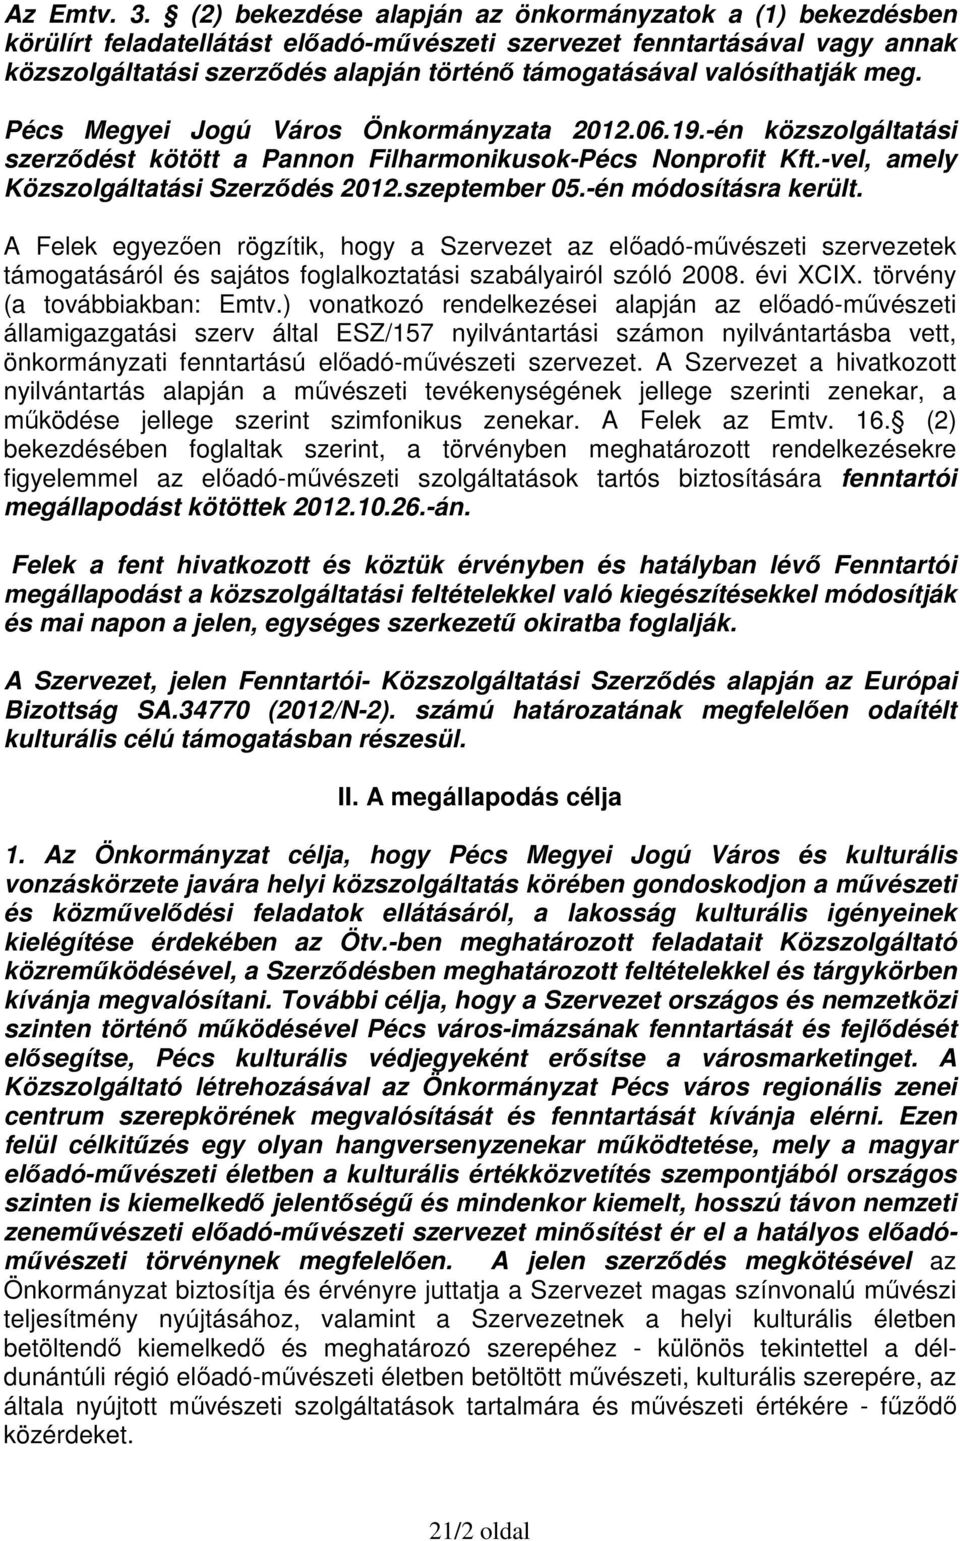 valósíthatják meg. Pécs Megyei Jogú Város Önkormányzata 2012.06.19.-én közszolgáltatási szerződést kötött a Pannon Filharmonikusok-Pécs Nonprofit Kft.-vel, amely Közszolgáltatási Szerződés 2012.